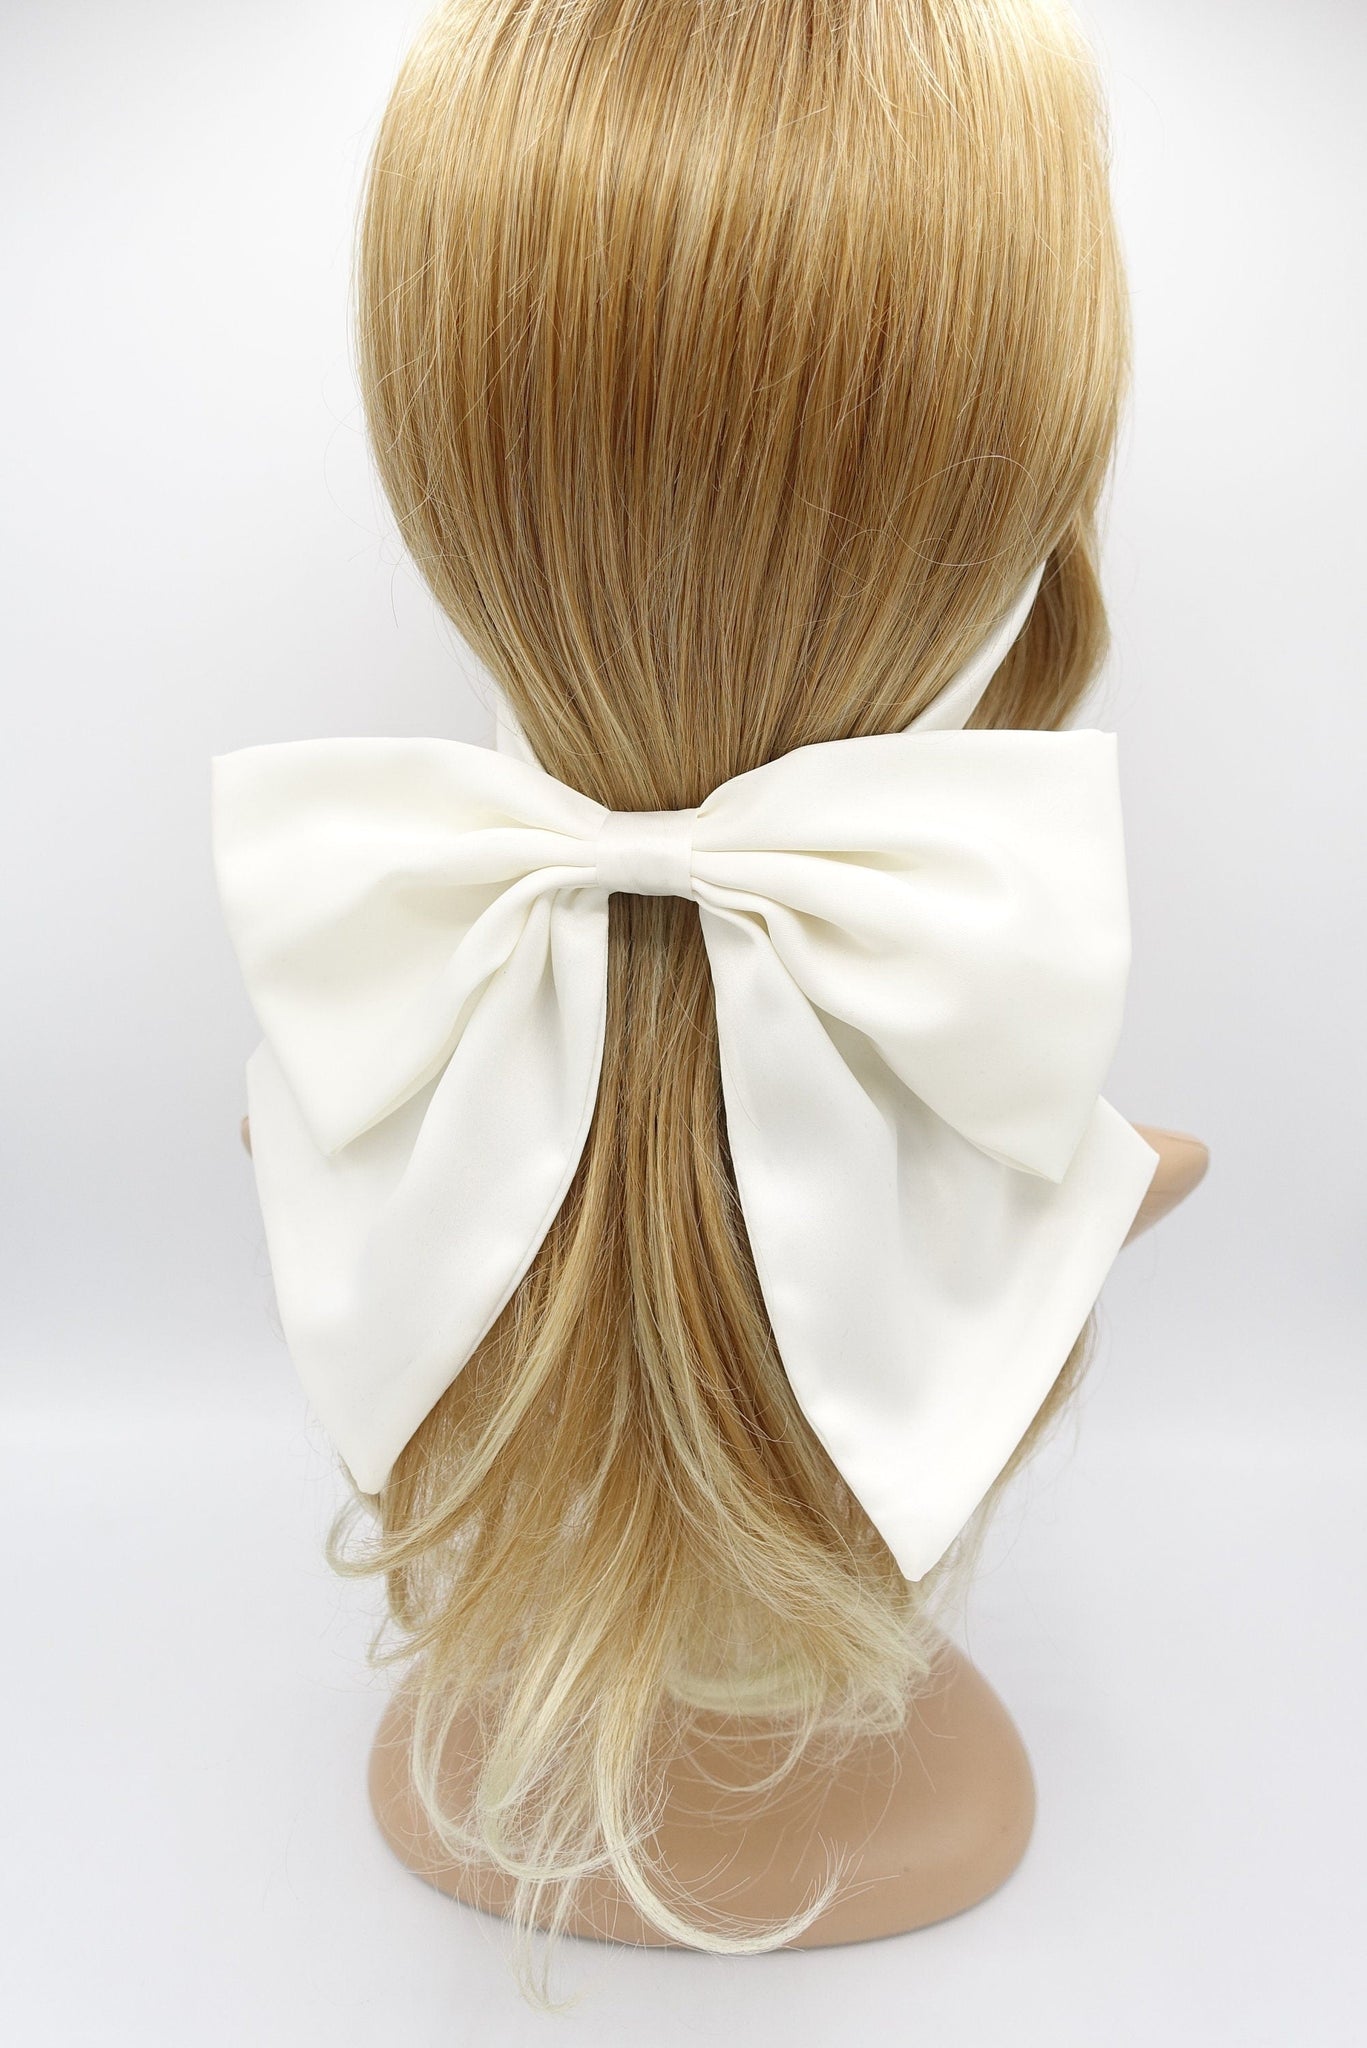 veryshine.com Headband Cream white satin headband, satin hair bow, bow headband, bridal hair accessory for women